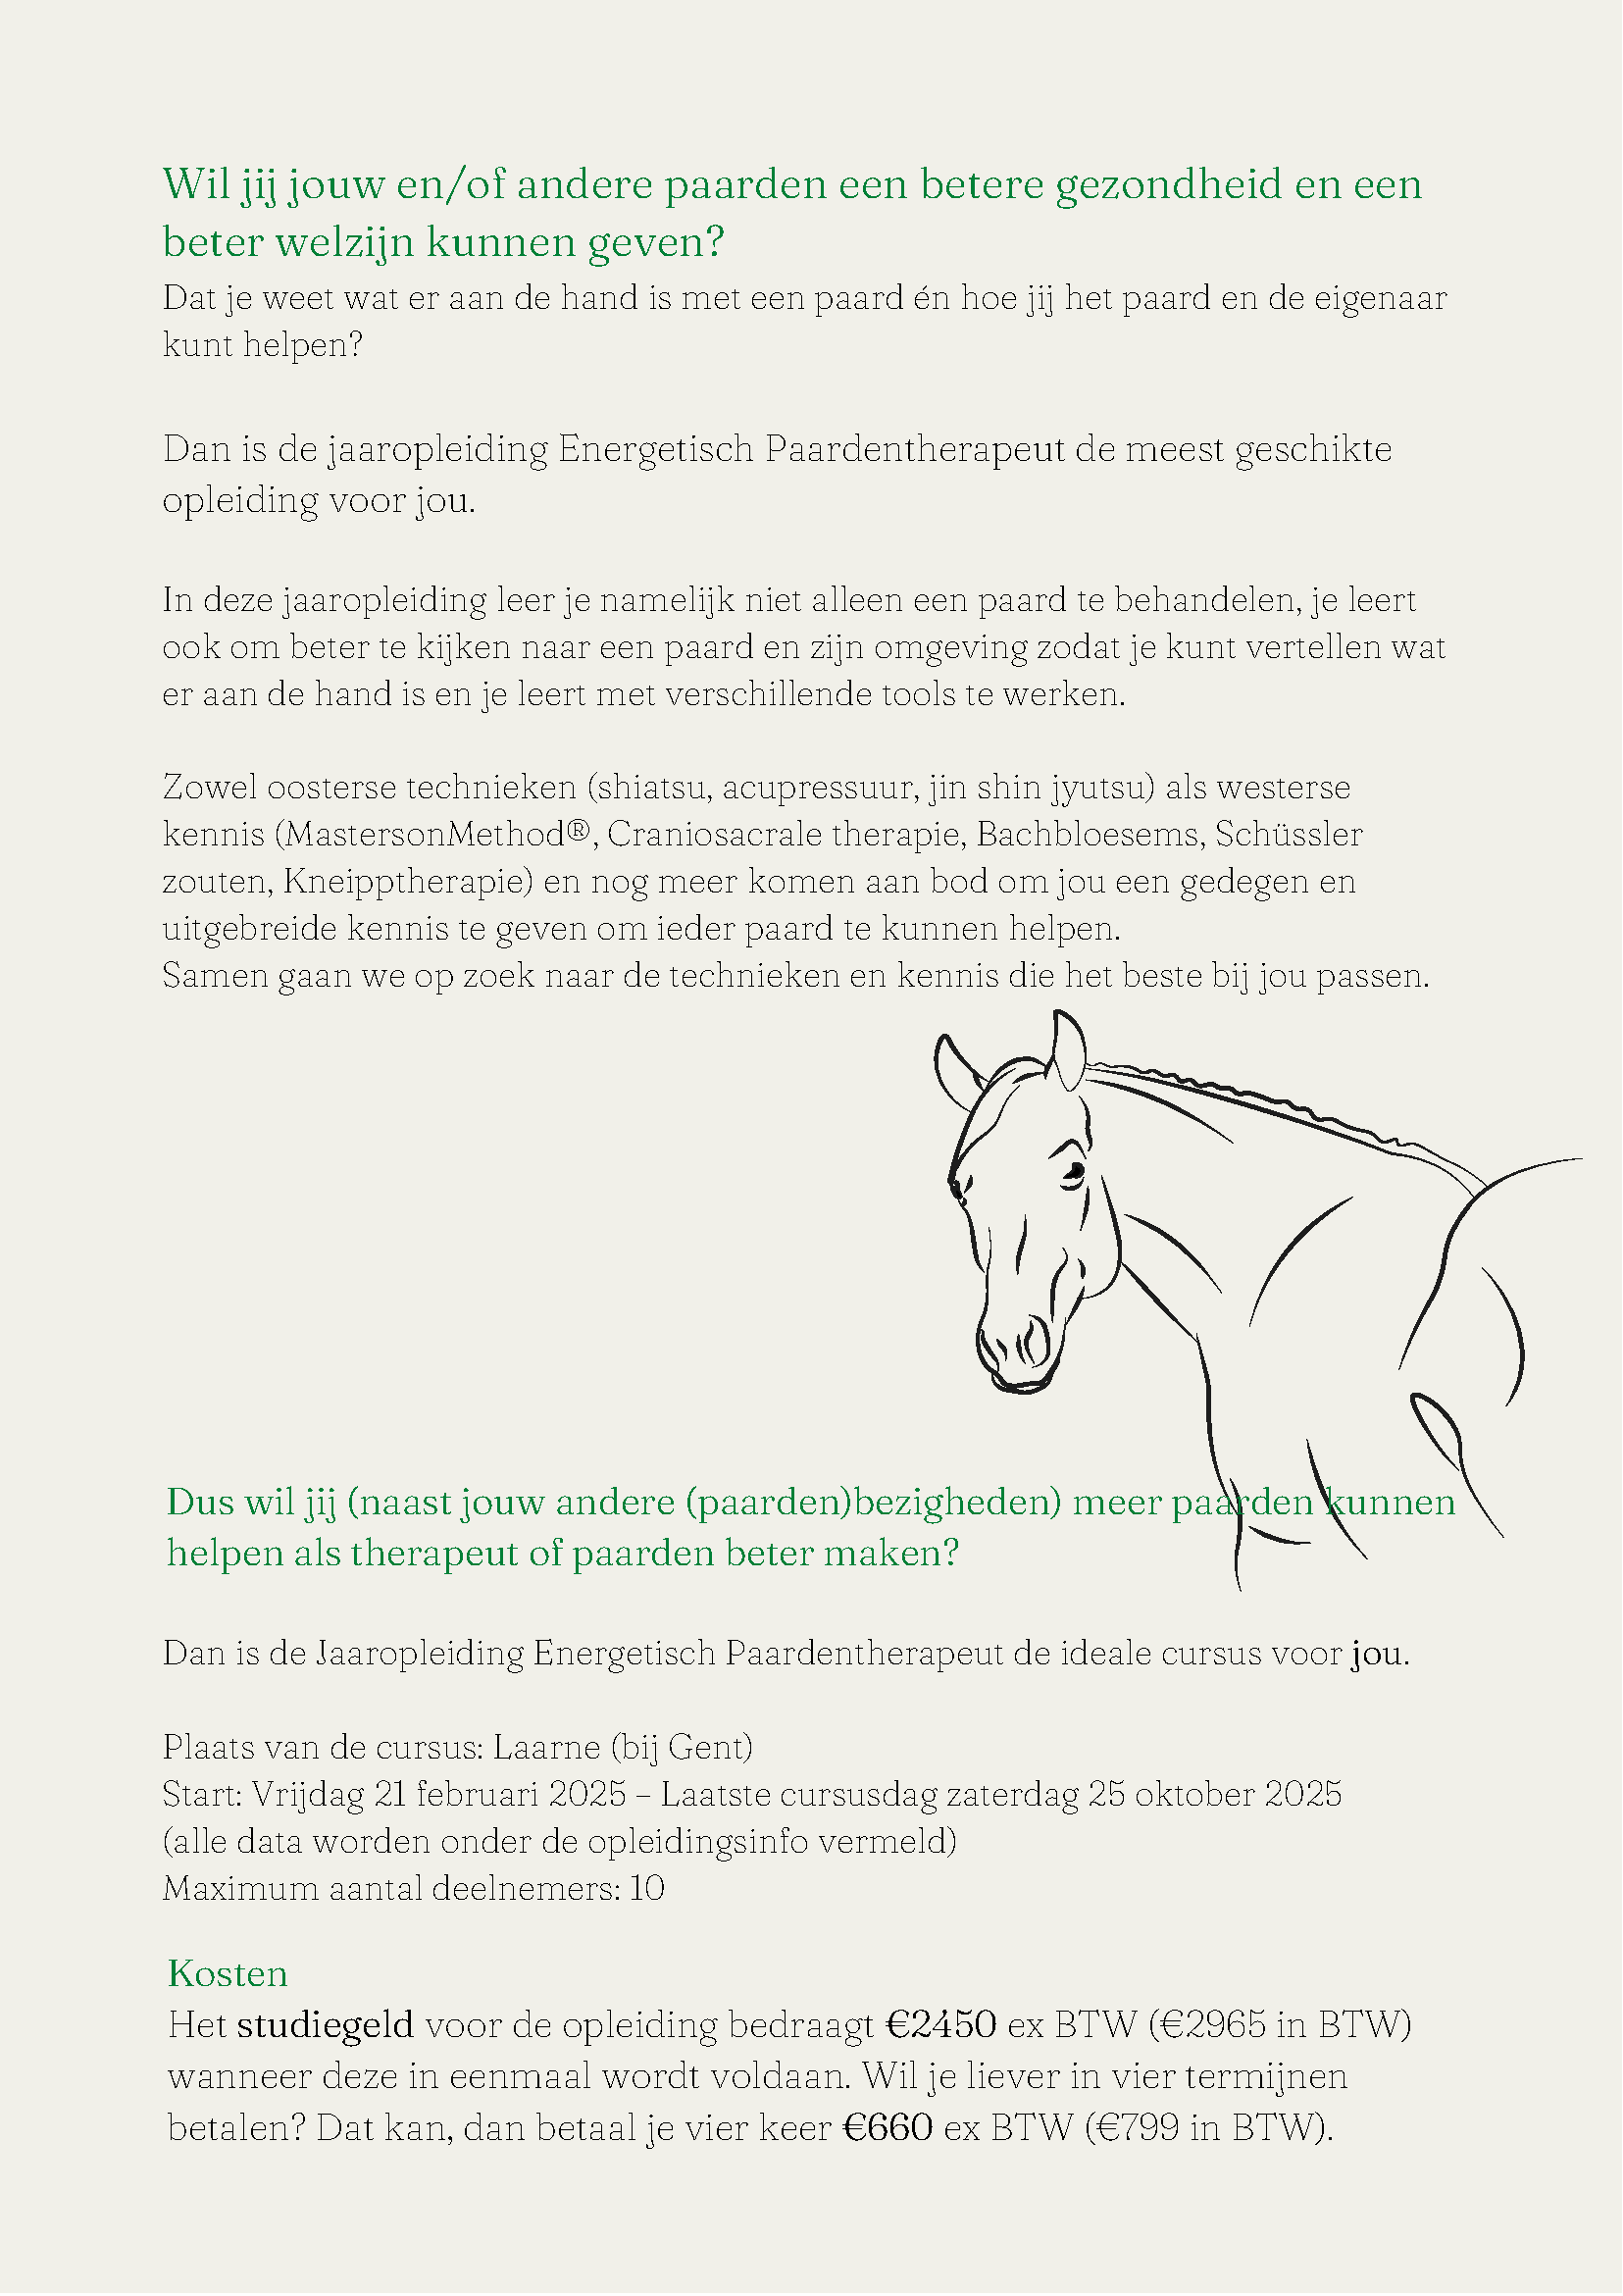 Jaaropleiding-Energetisch-Paardentherapeut-Laarne-2025_2